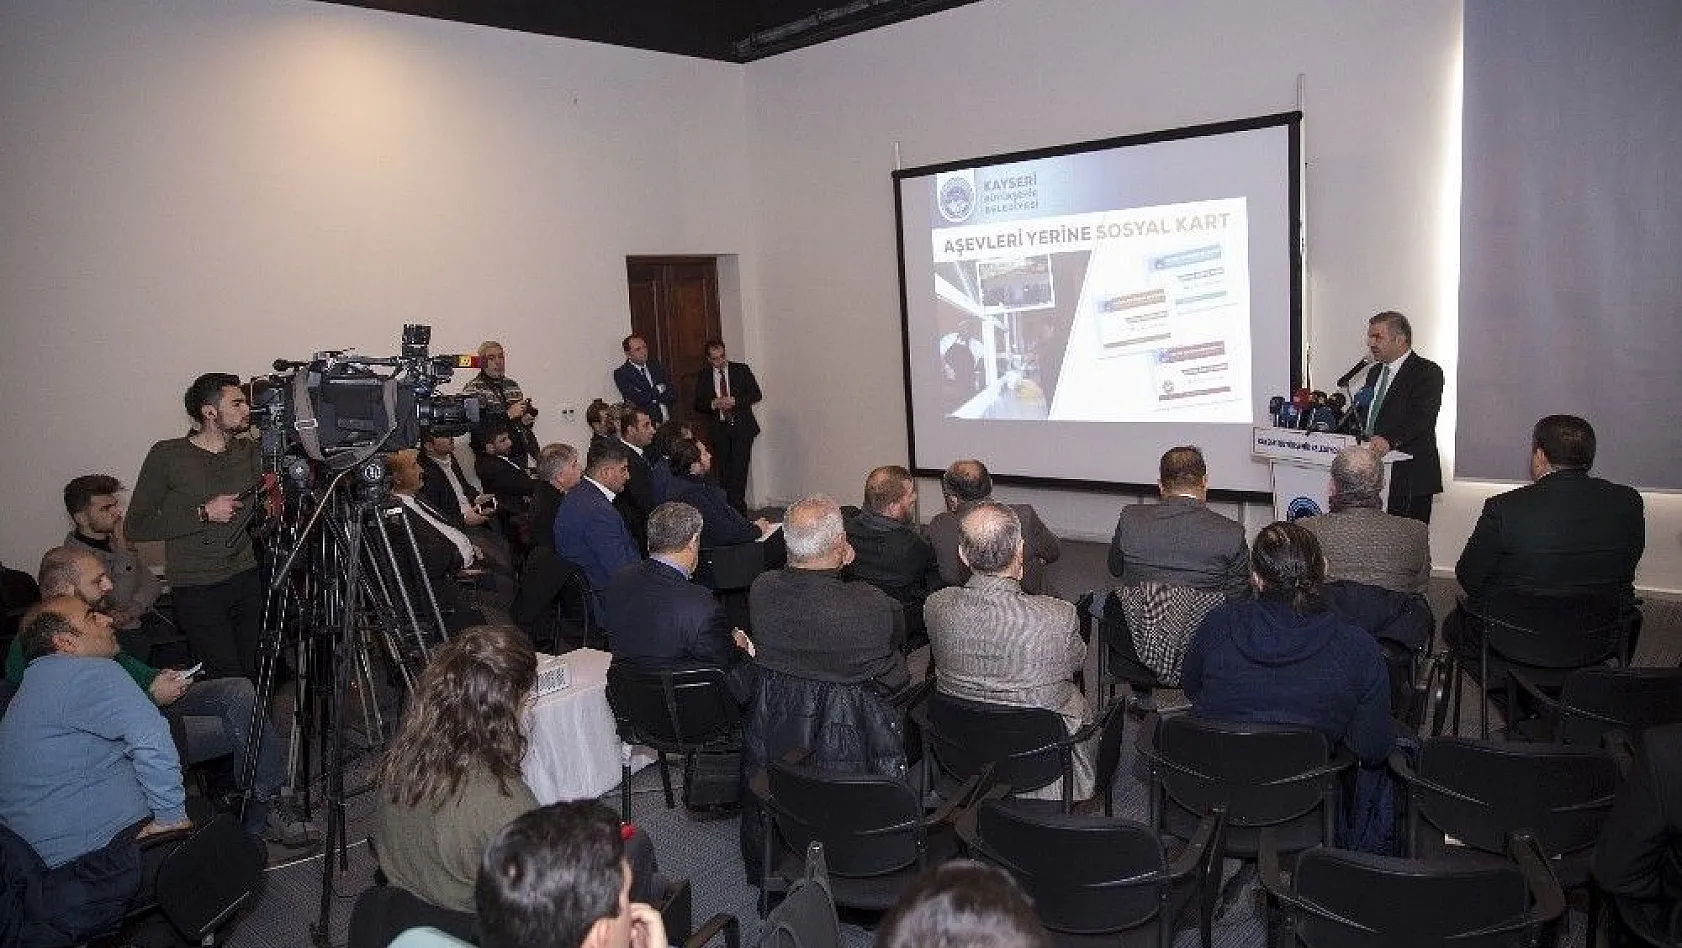 Başkan Çelik, Kayseri Kardeşlik Platformu Projesini tanıttı